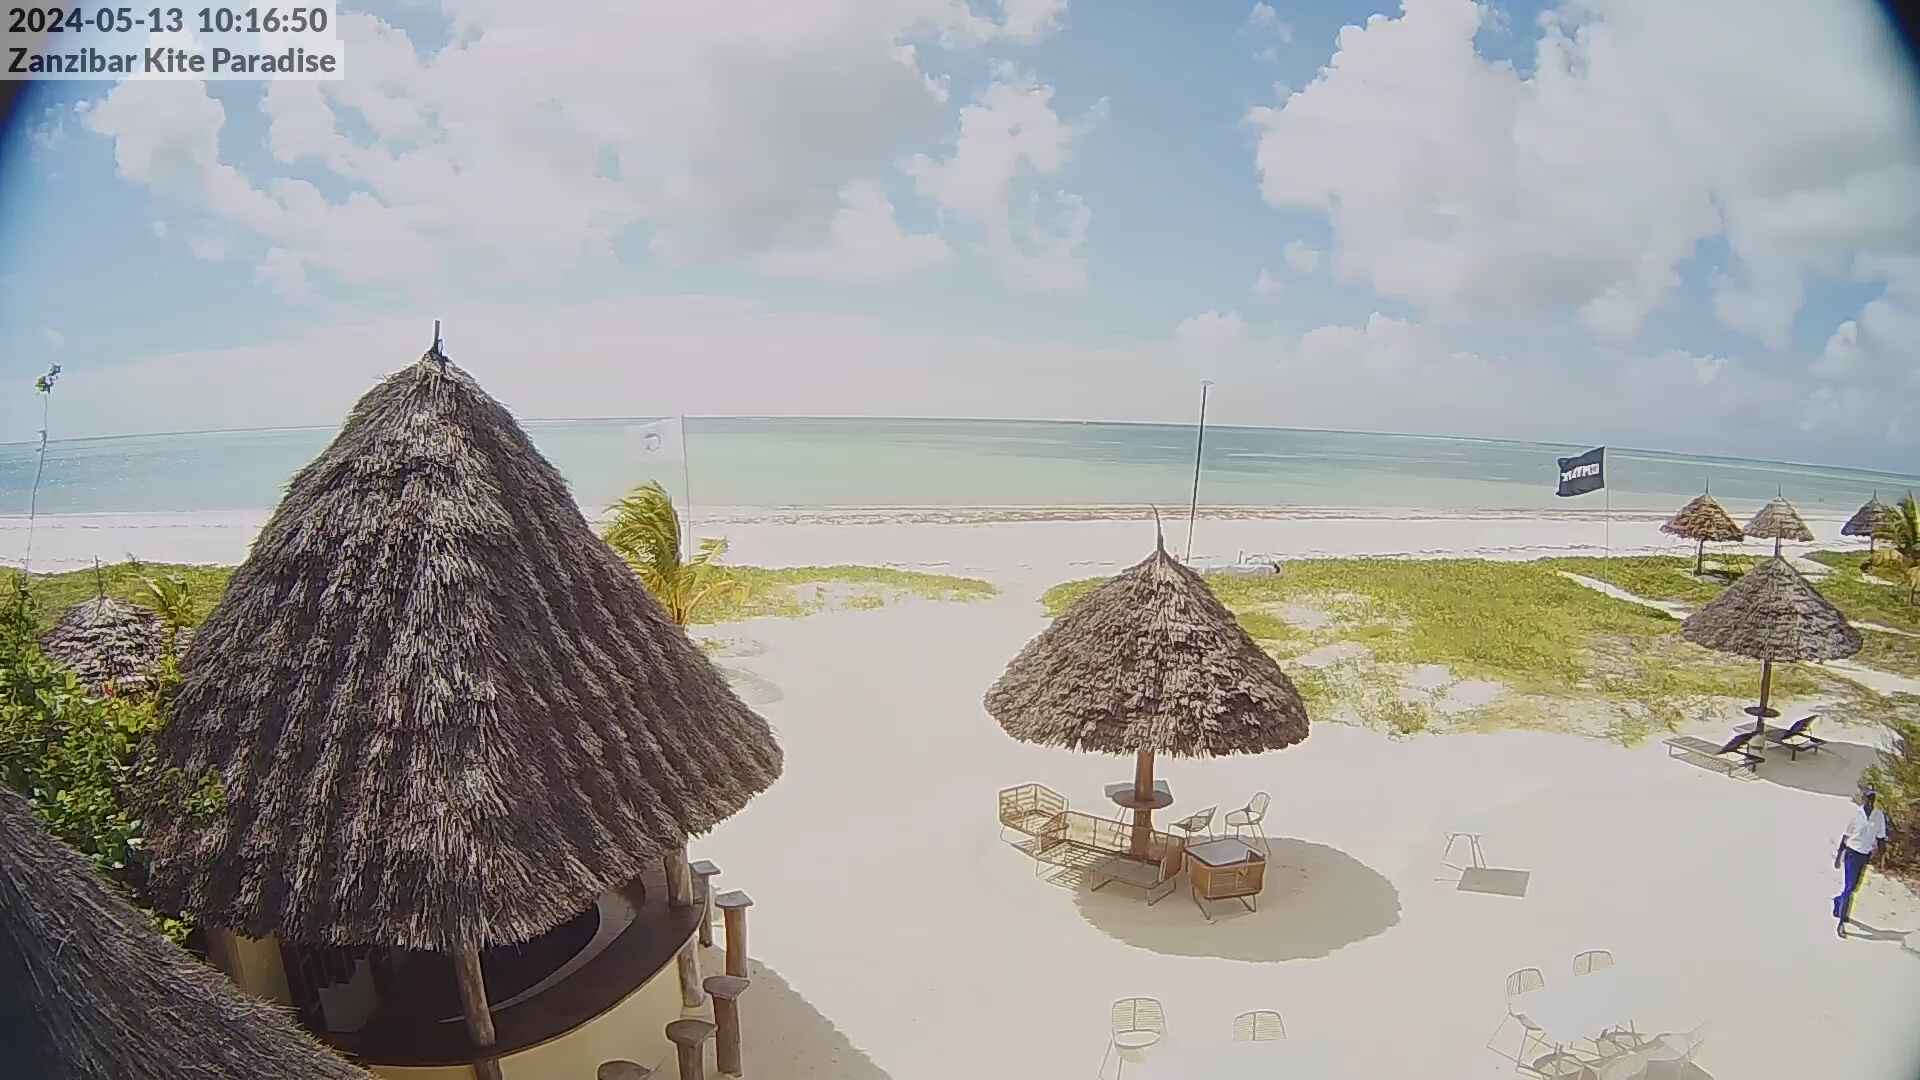 Paje Beach (Zanzibar) Mar. 10:18